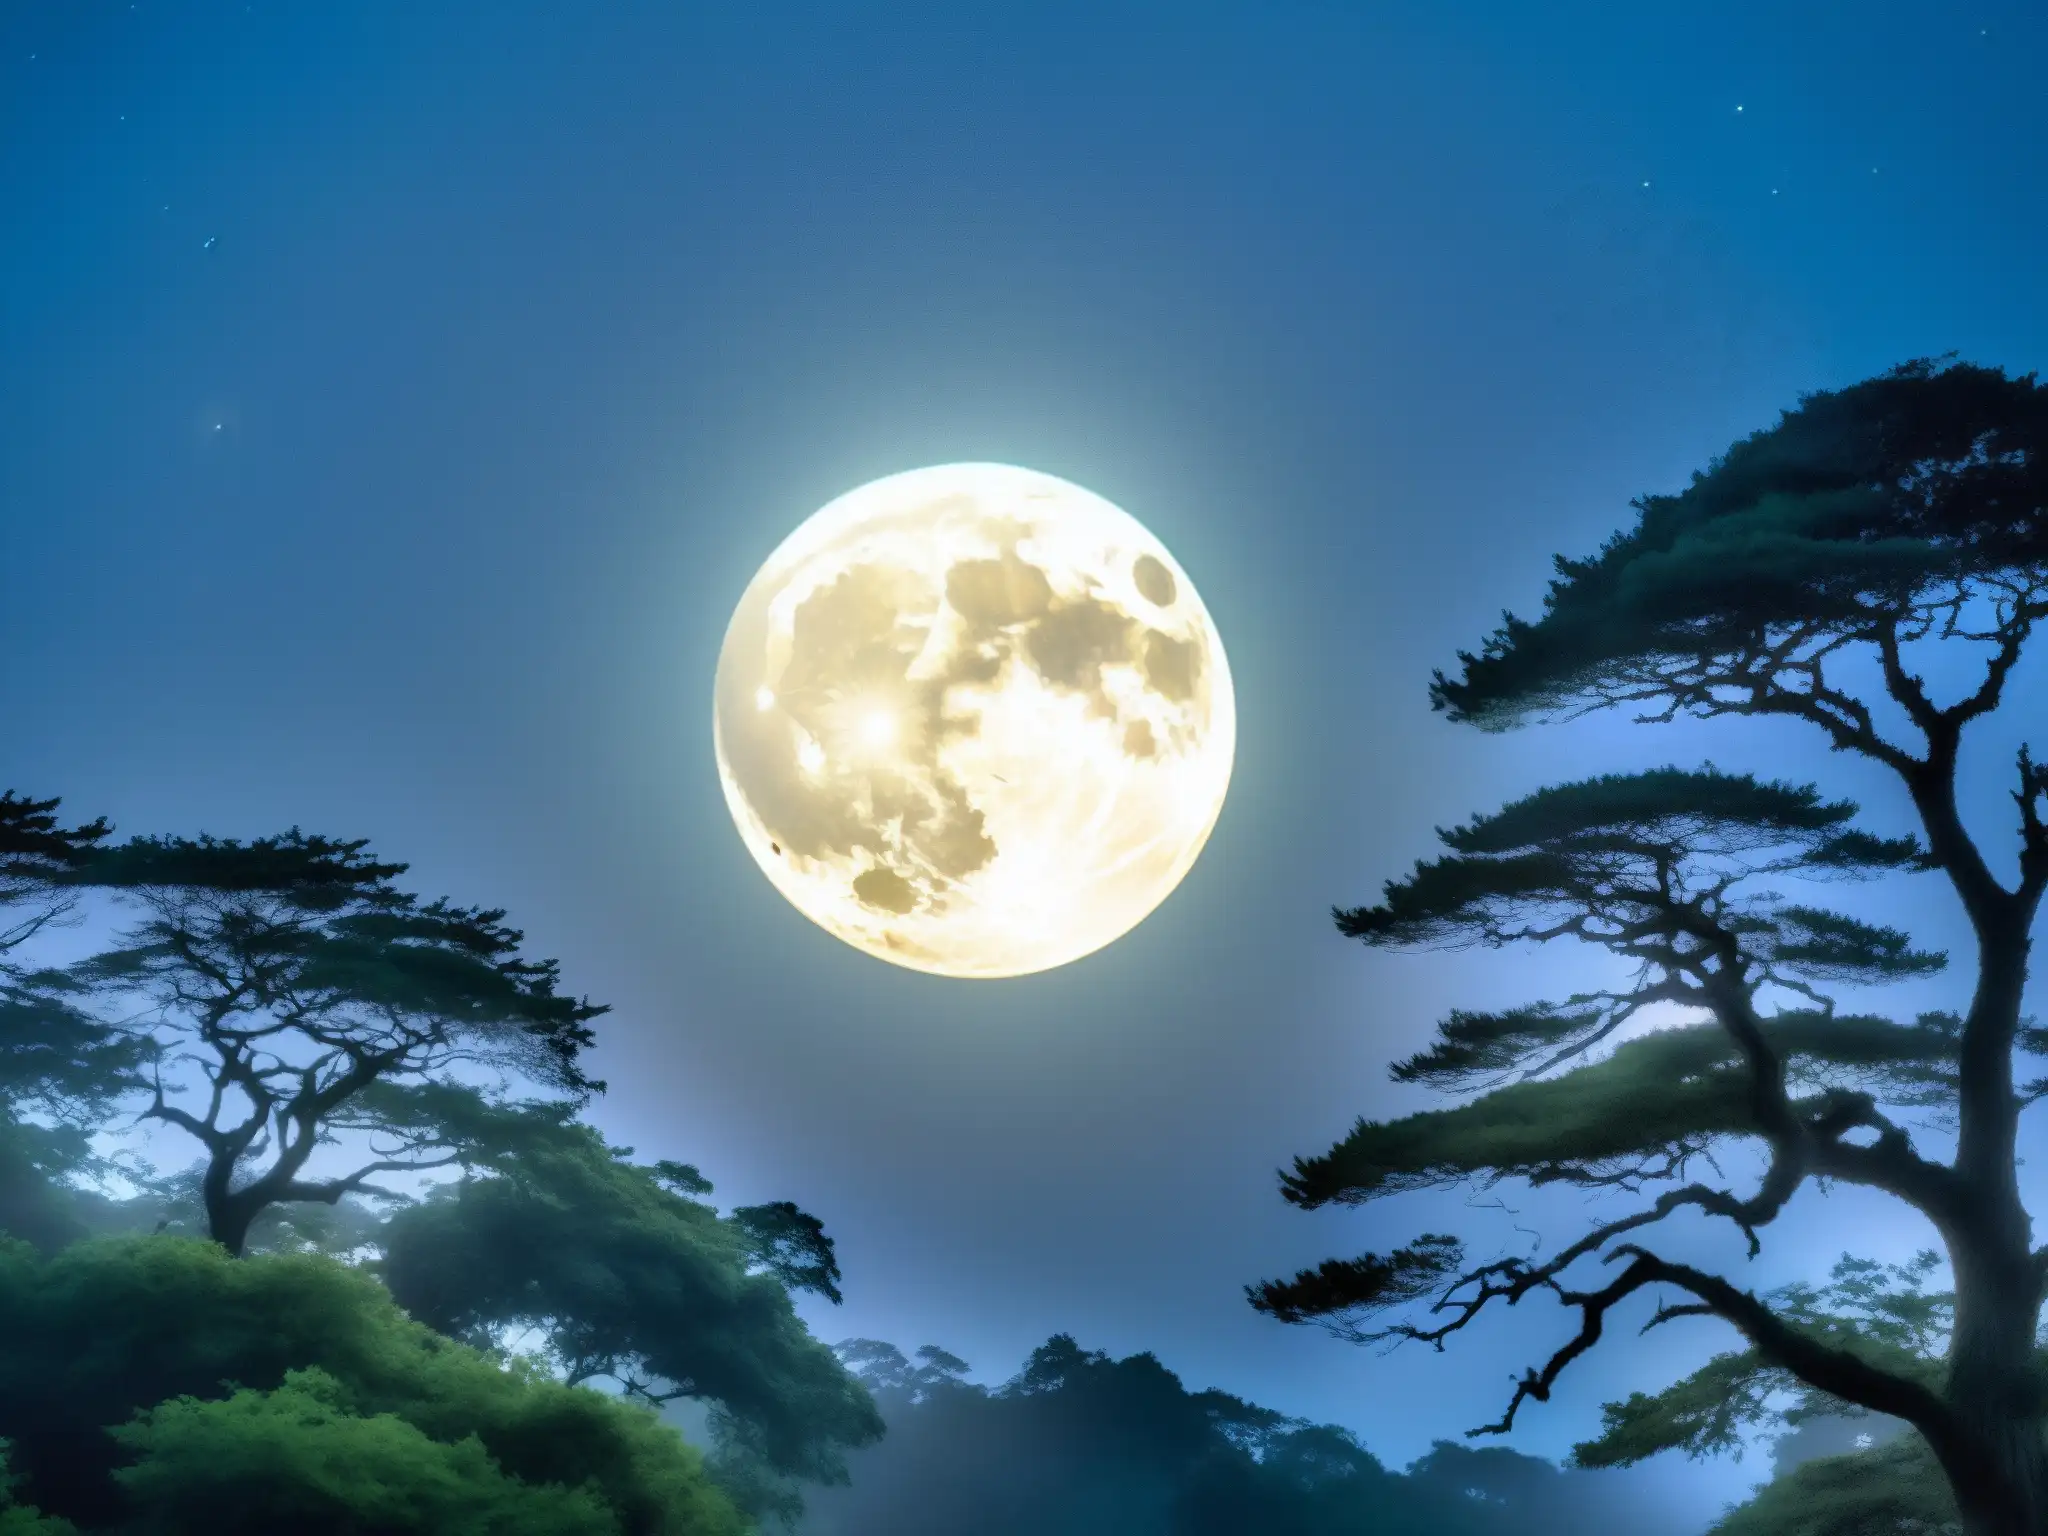 Un bosque místico bajo la luna llena evoca leyendas urbanas de Tsukuyomi, creando un ambiente encantador y misterioso